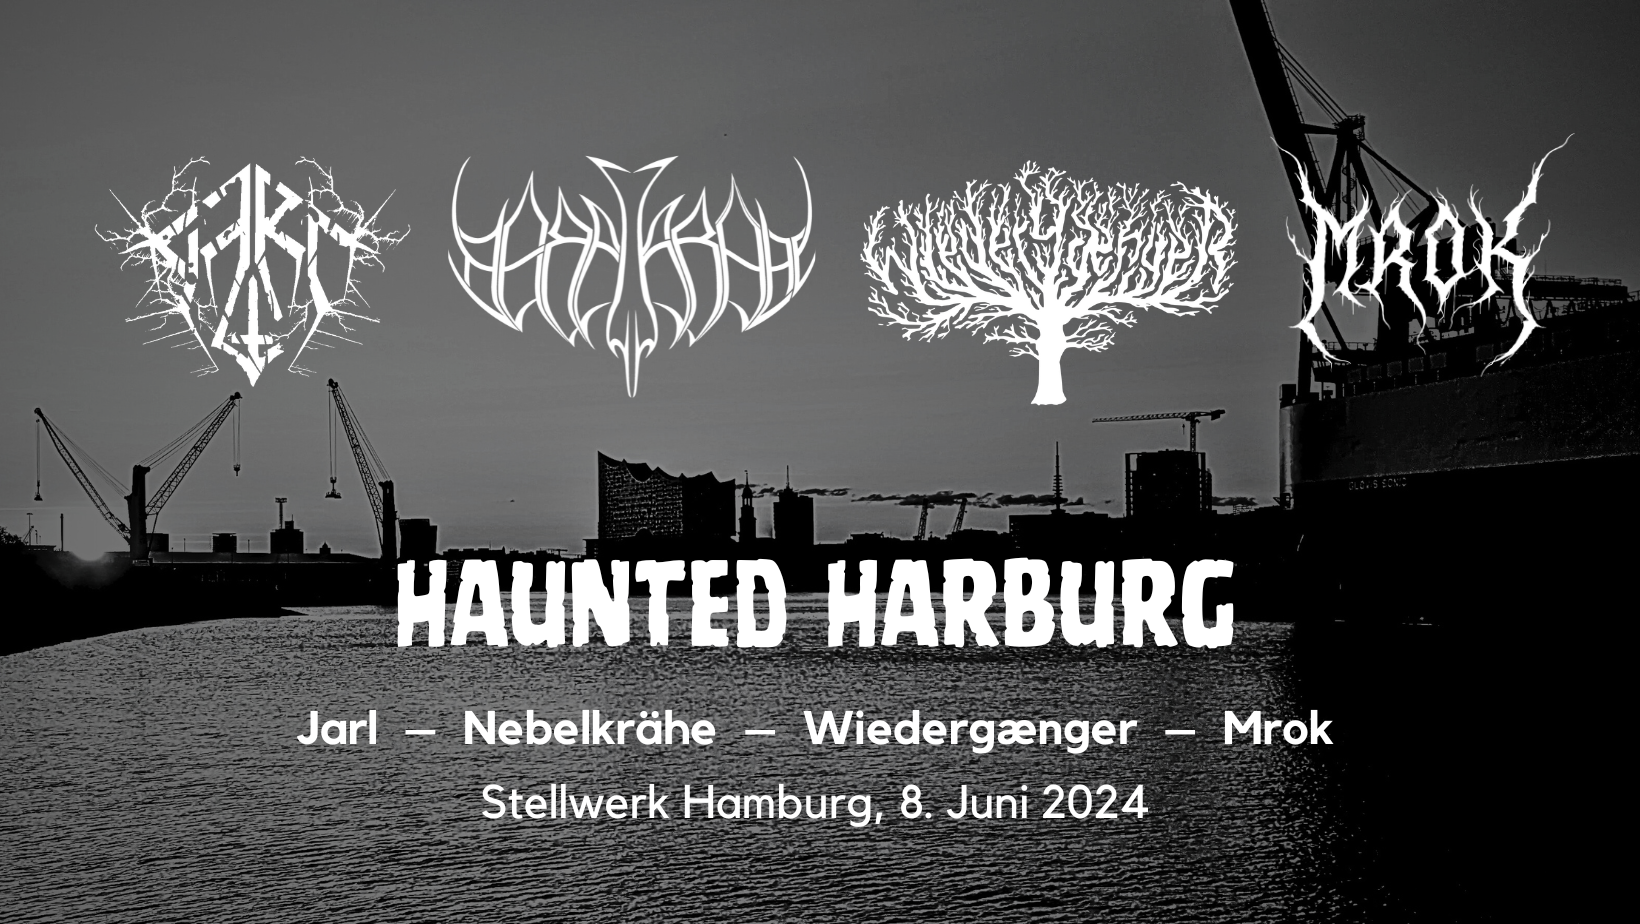 Konzertwerbung für Haunted Harburg mit Jarl, Nebelkrähe, Wiedergænger und Mrok im Stellwerk Hamburg, 8.6.2024